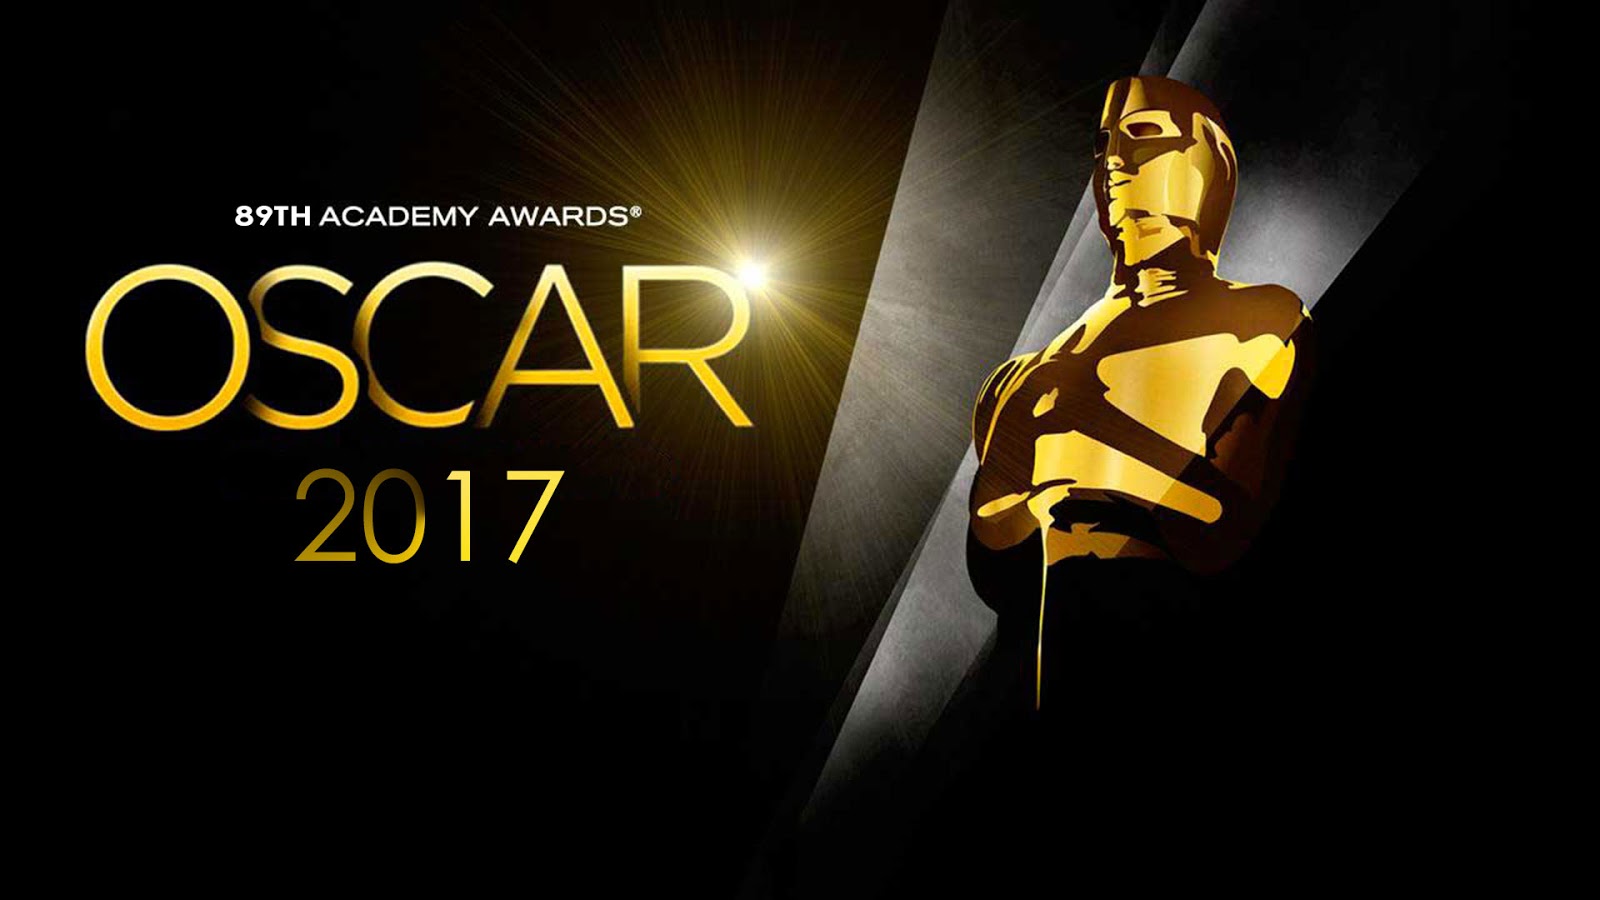 Оскар 2017: номинанты, наши прогнозы и фавориты